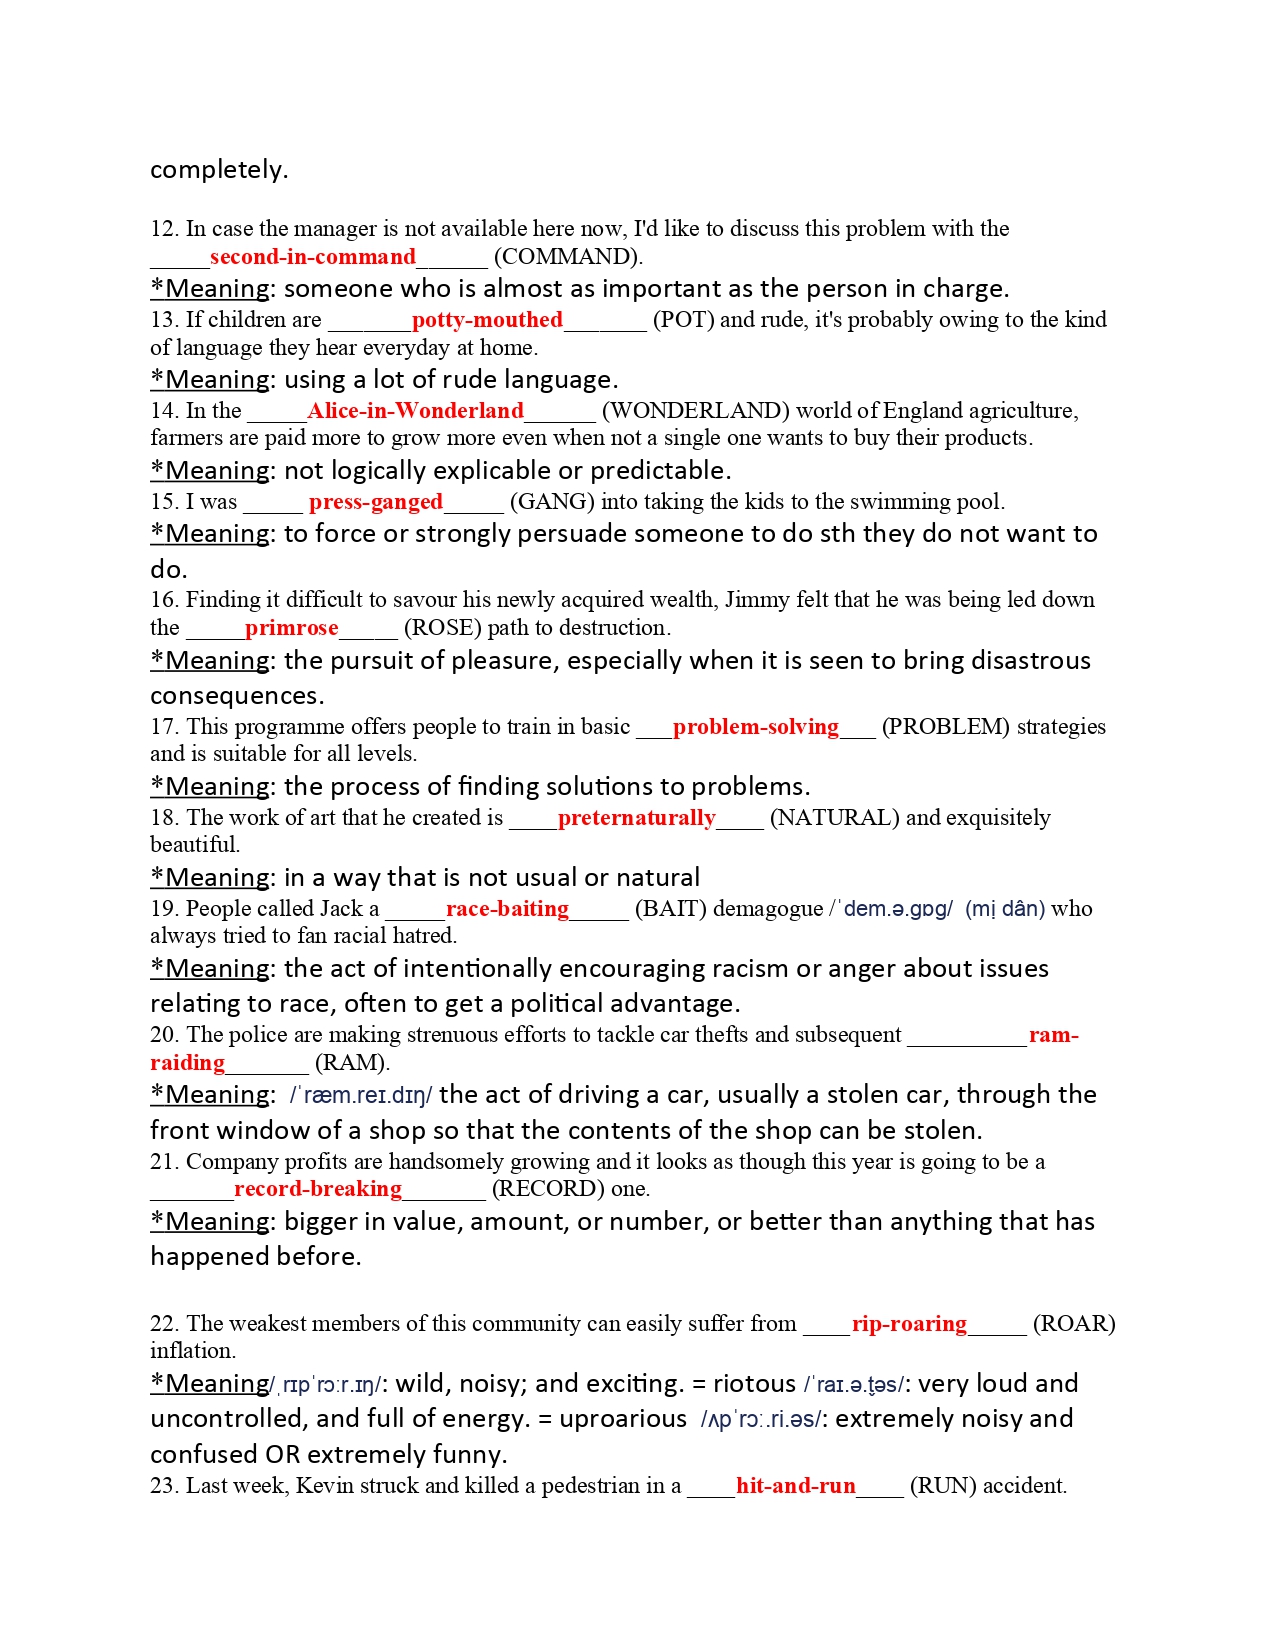 [tailieudieuky.com] Bài tập word form ôn thi học sinh giỏi quốc gia có đáp án - Word form for NEC - PROJECT EZWORDFORMONDAMIC OF CAO BILL (14 trang)_page-0002